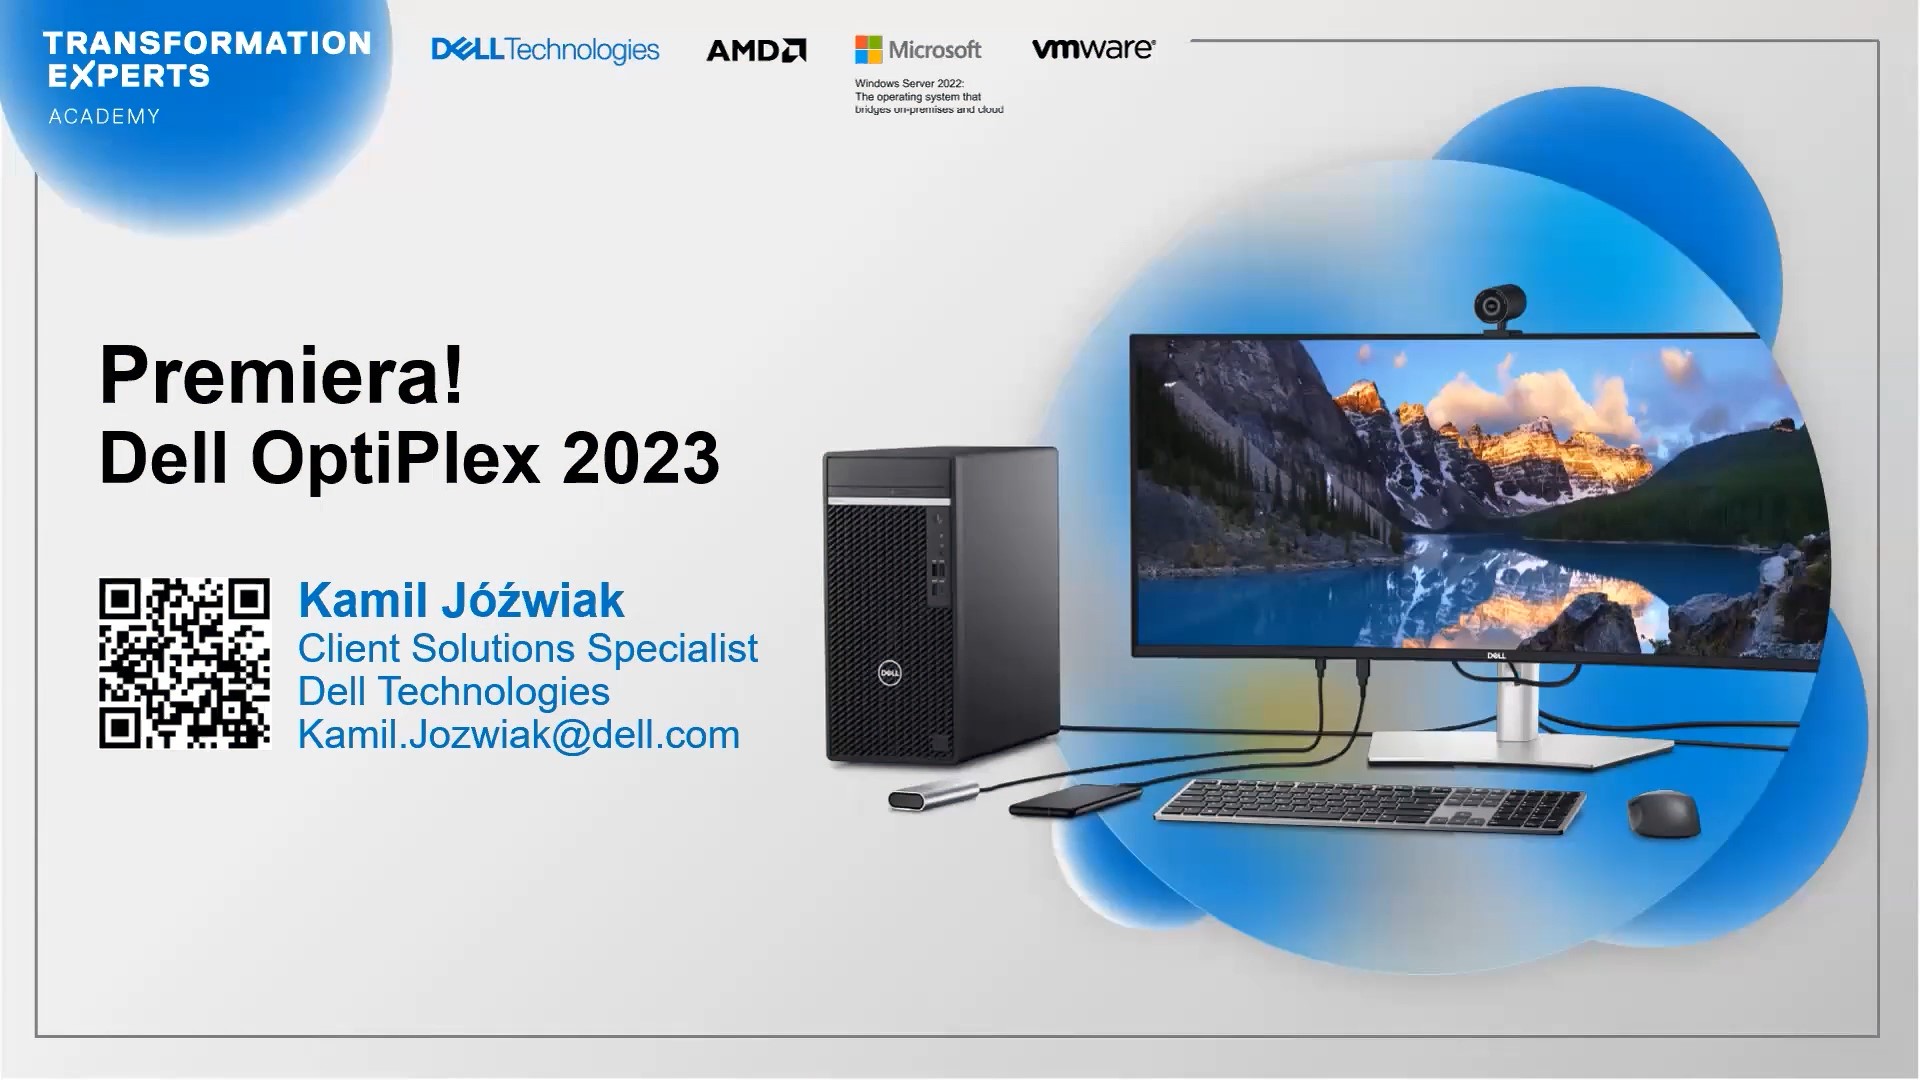 Zapis webinaru: Premiera Dell OptiPlex 2023